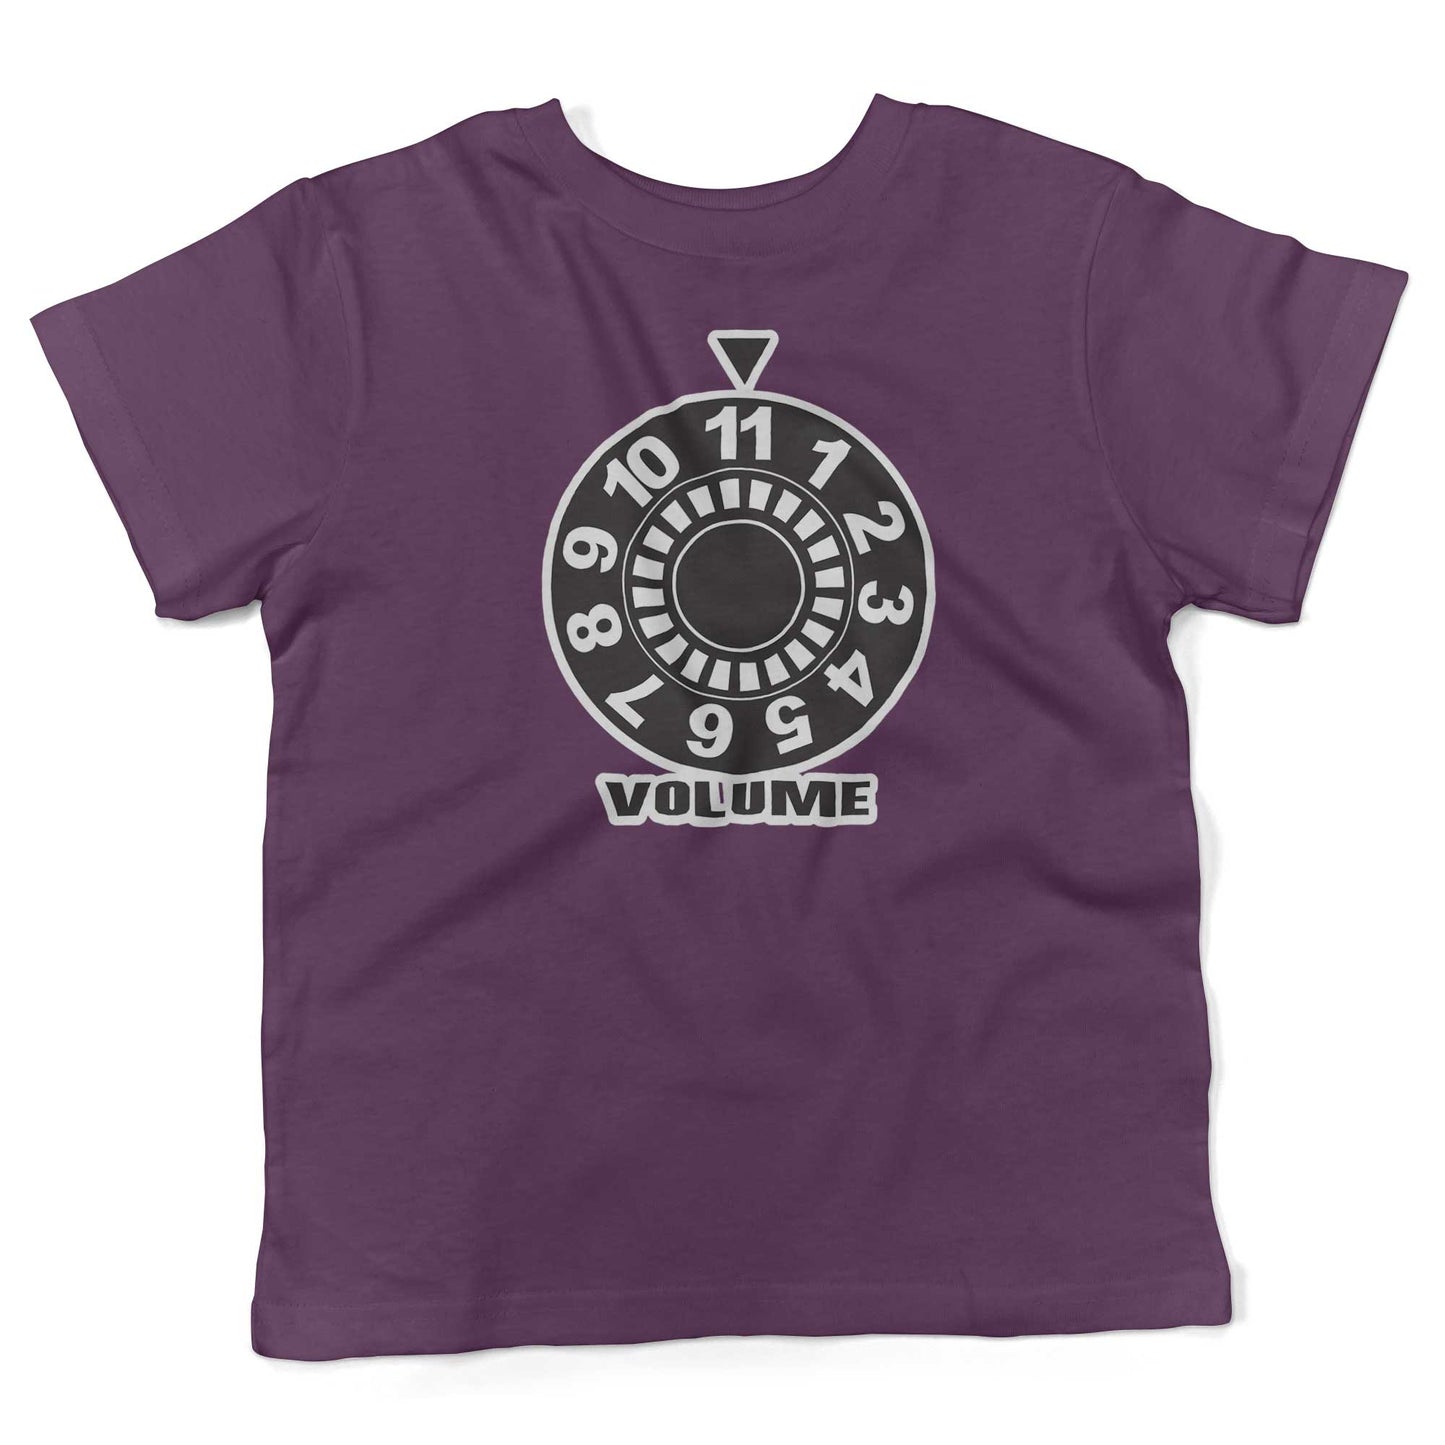 Turn It Up To 11 Toddler Shirt-Organic Purple-2T